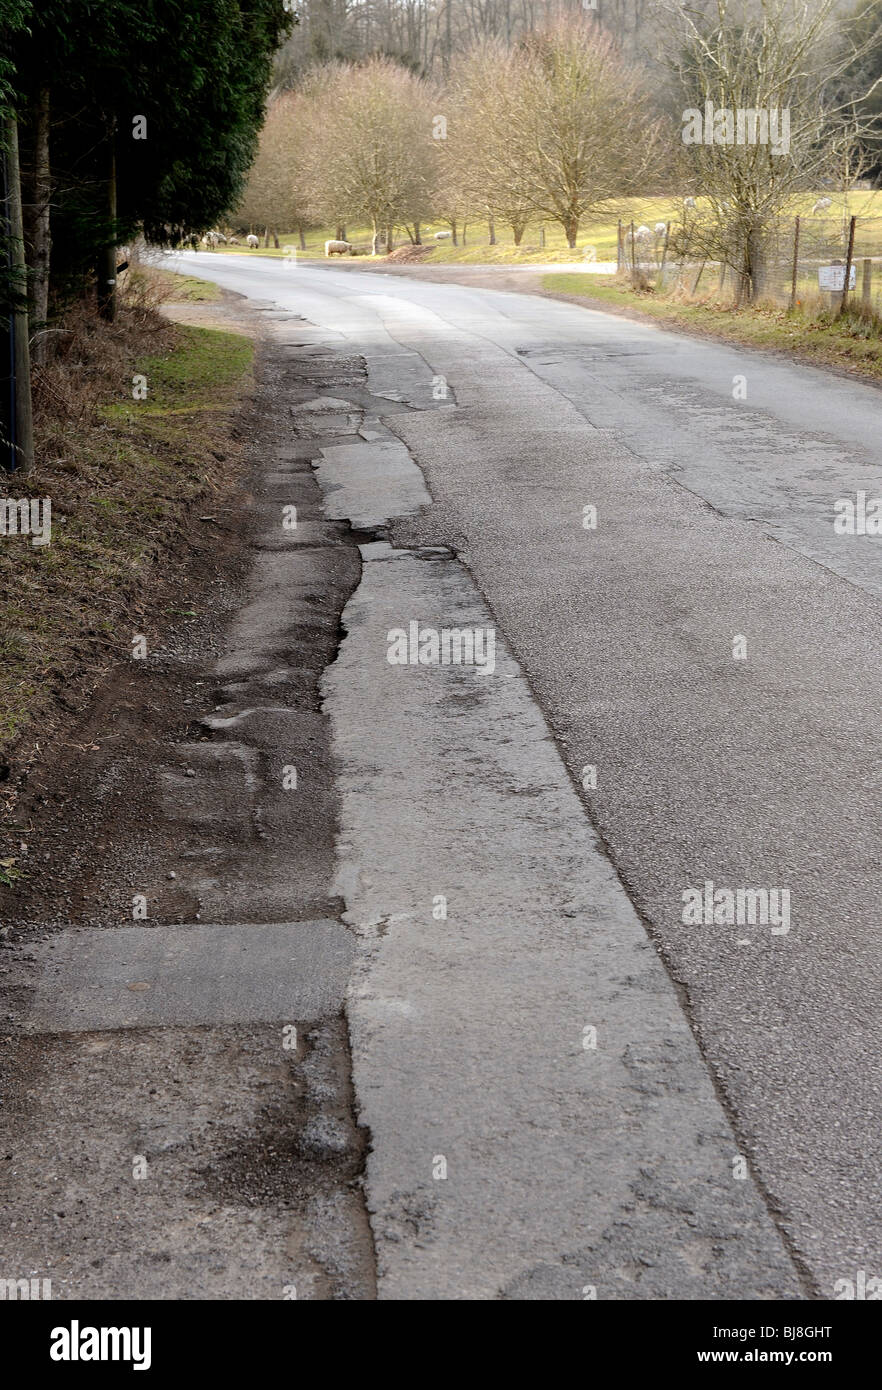 Potholes on UK roads Stock Photo